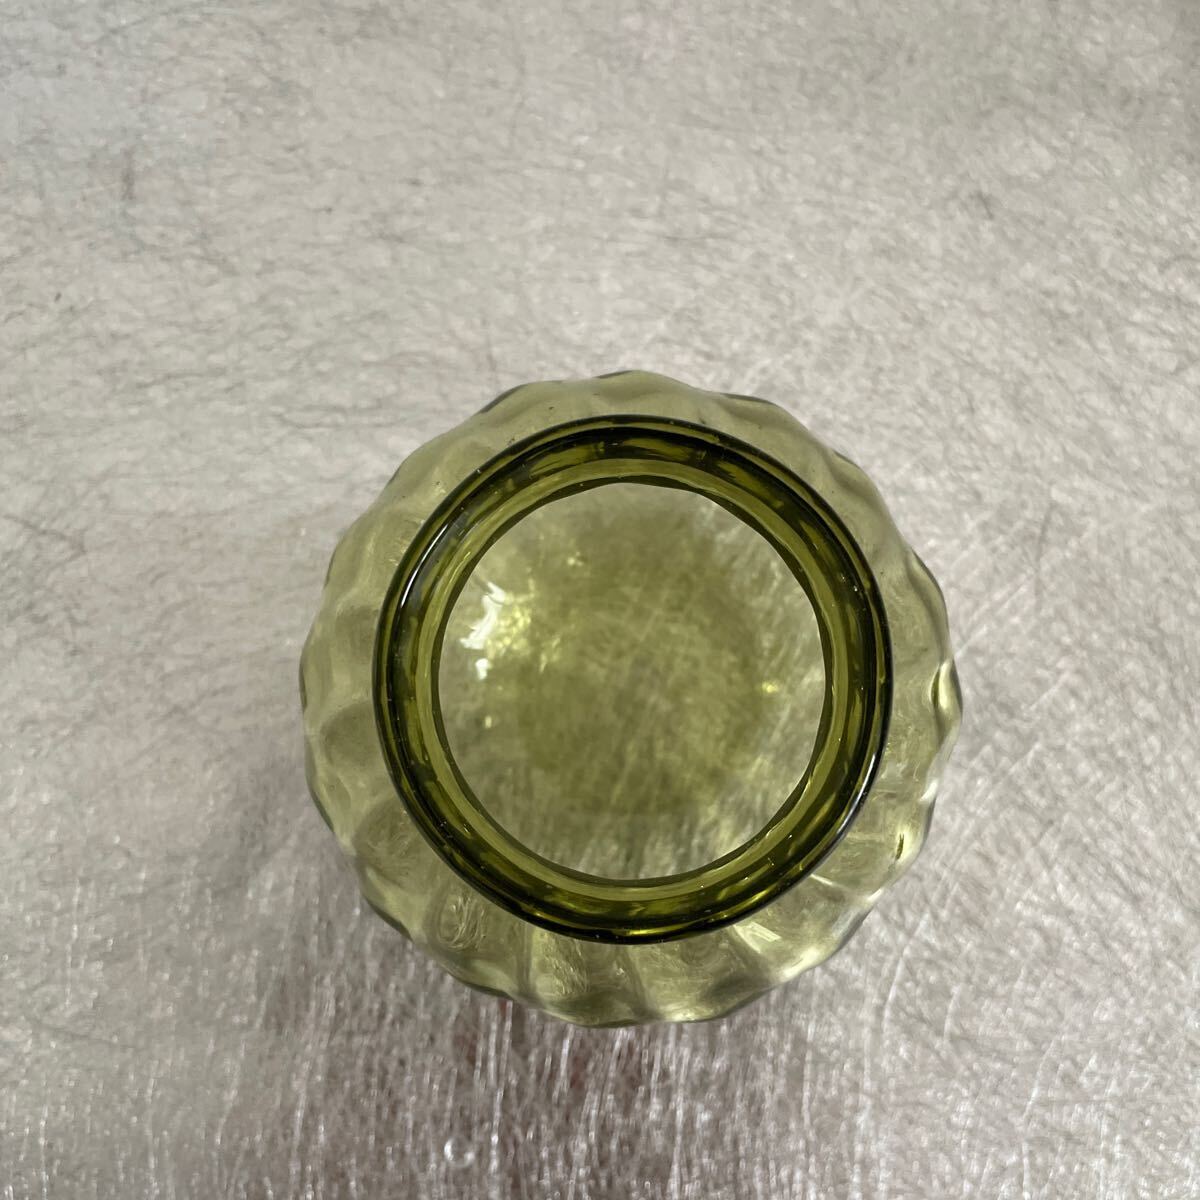  сладости pot емкость для хранения стеклянная бутылка стекло стекло контейнер маленький . подлинный три Kurashiki стекло 